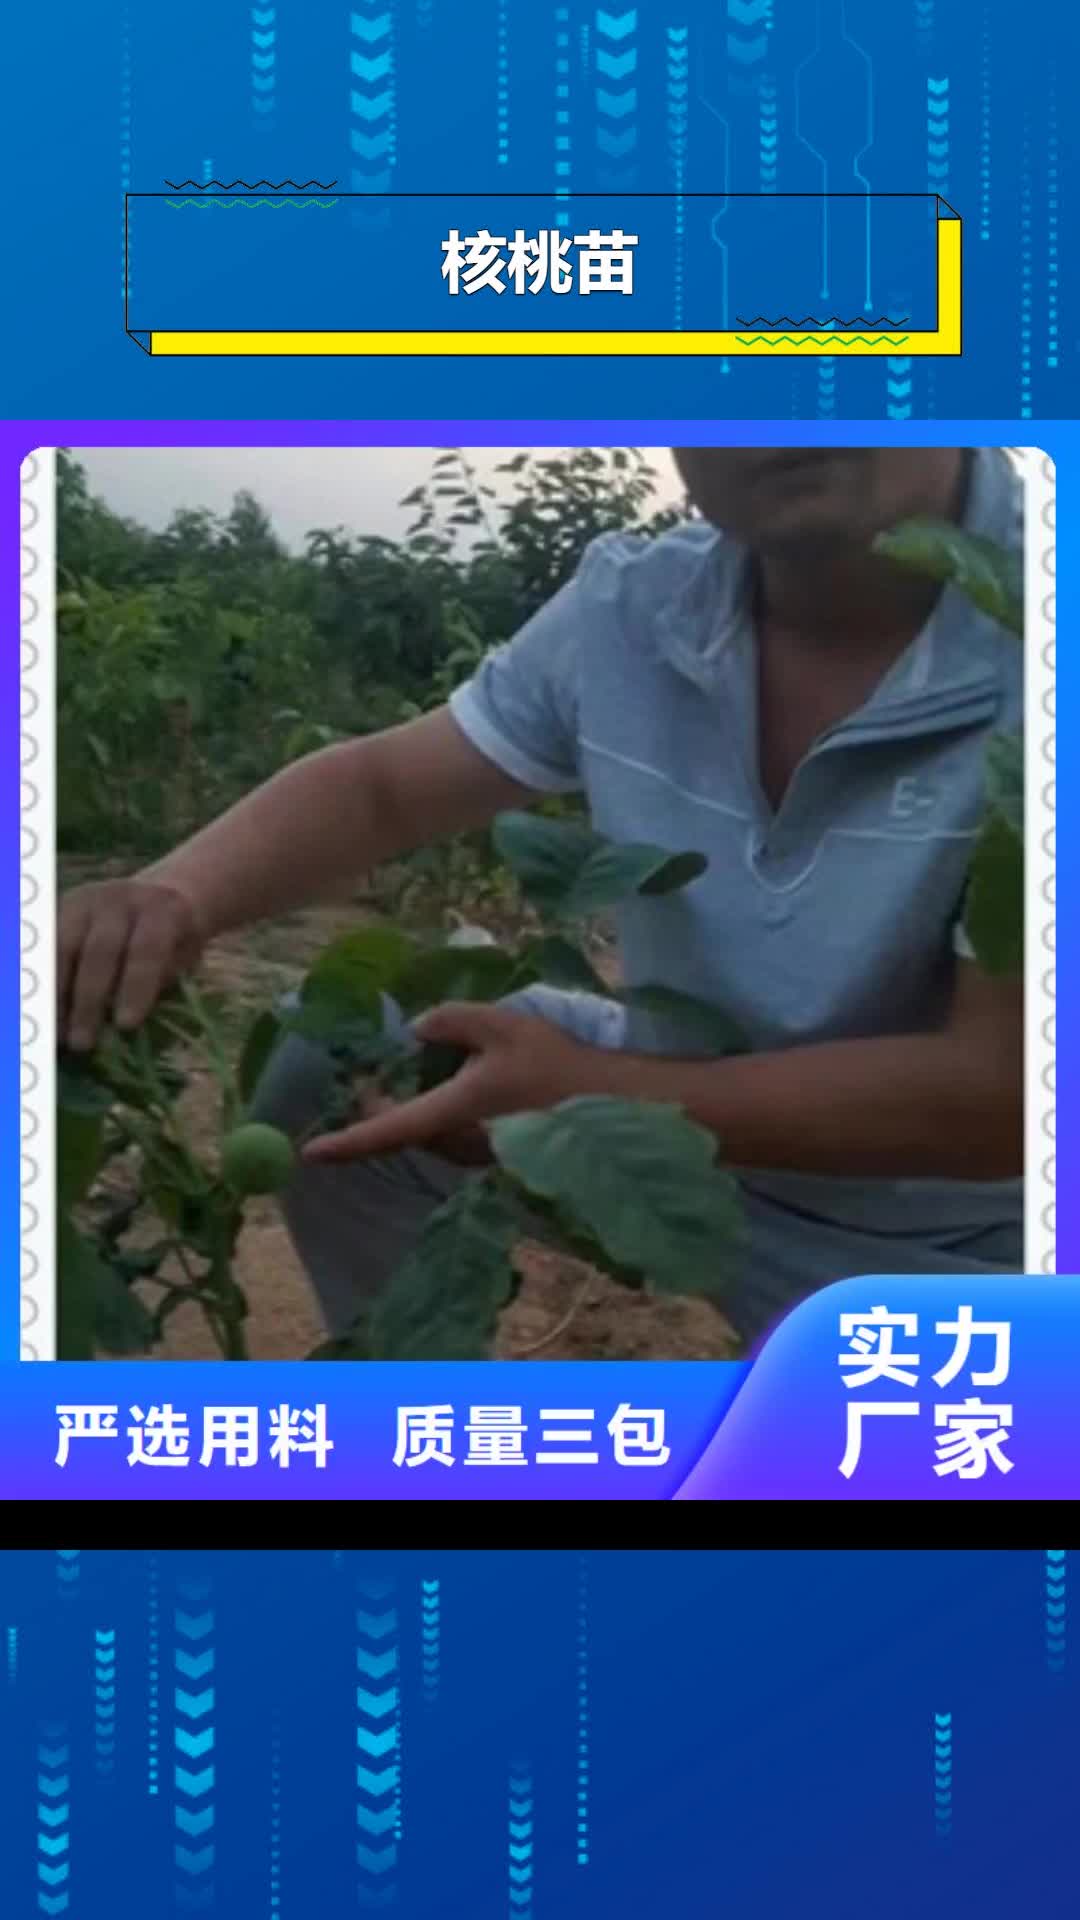 【苏州 核桃苗-蓝莓苗规格型号全】